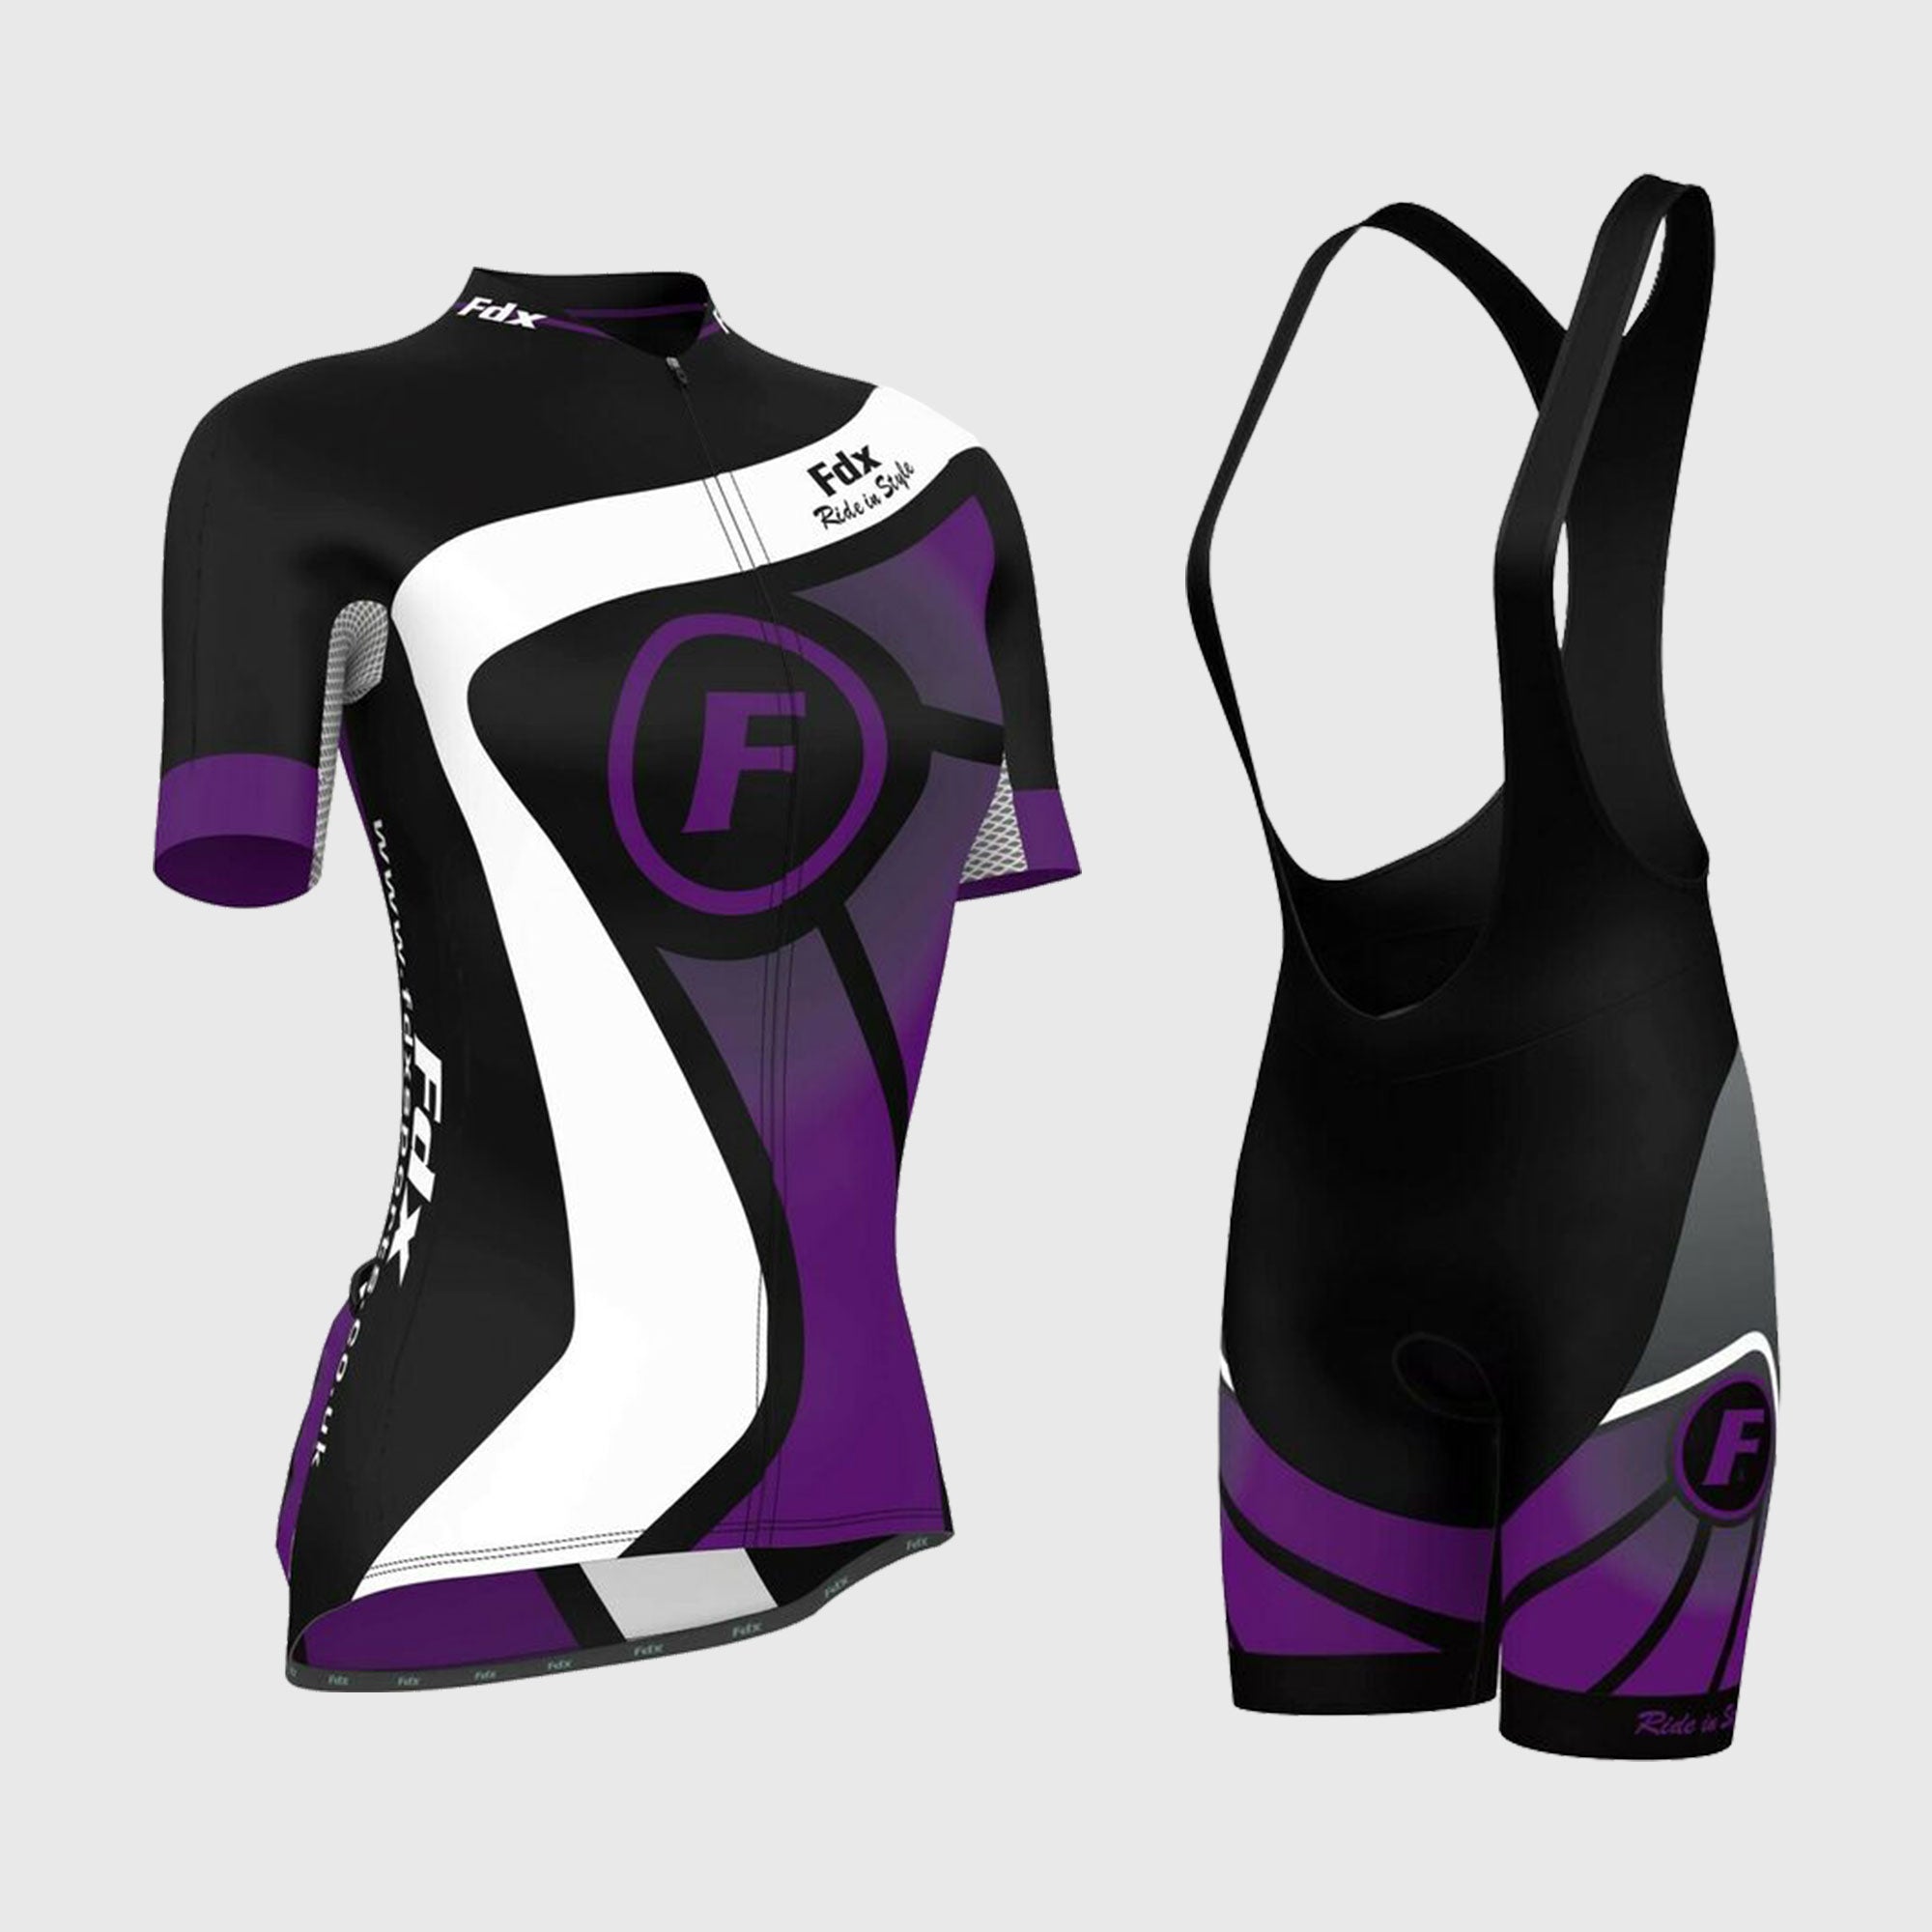 Fdx Women's Set Signature Purple Short Sleeve Cycling Jersey & Bib Shorts